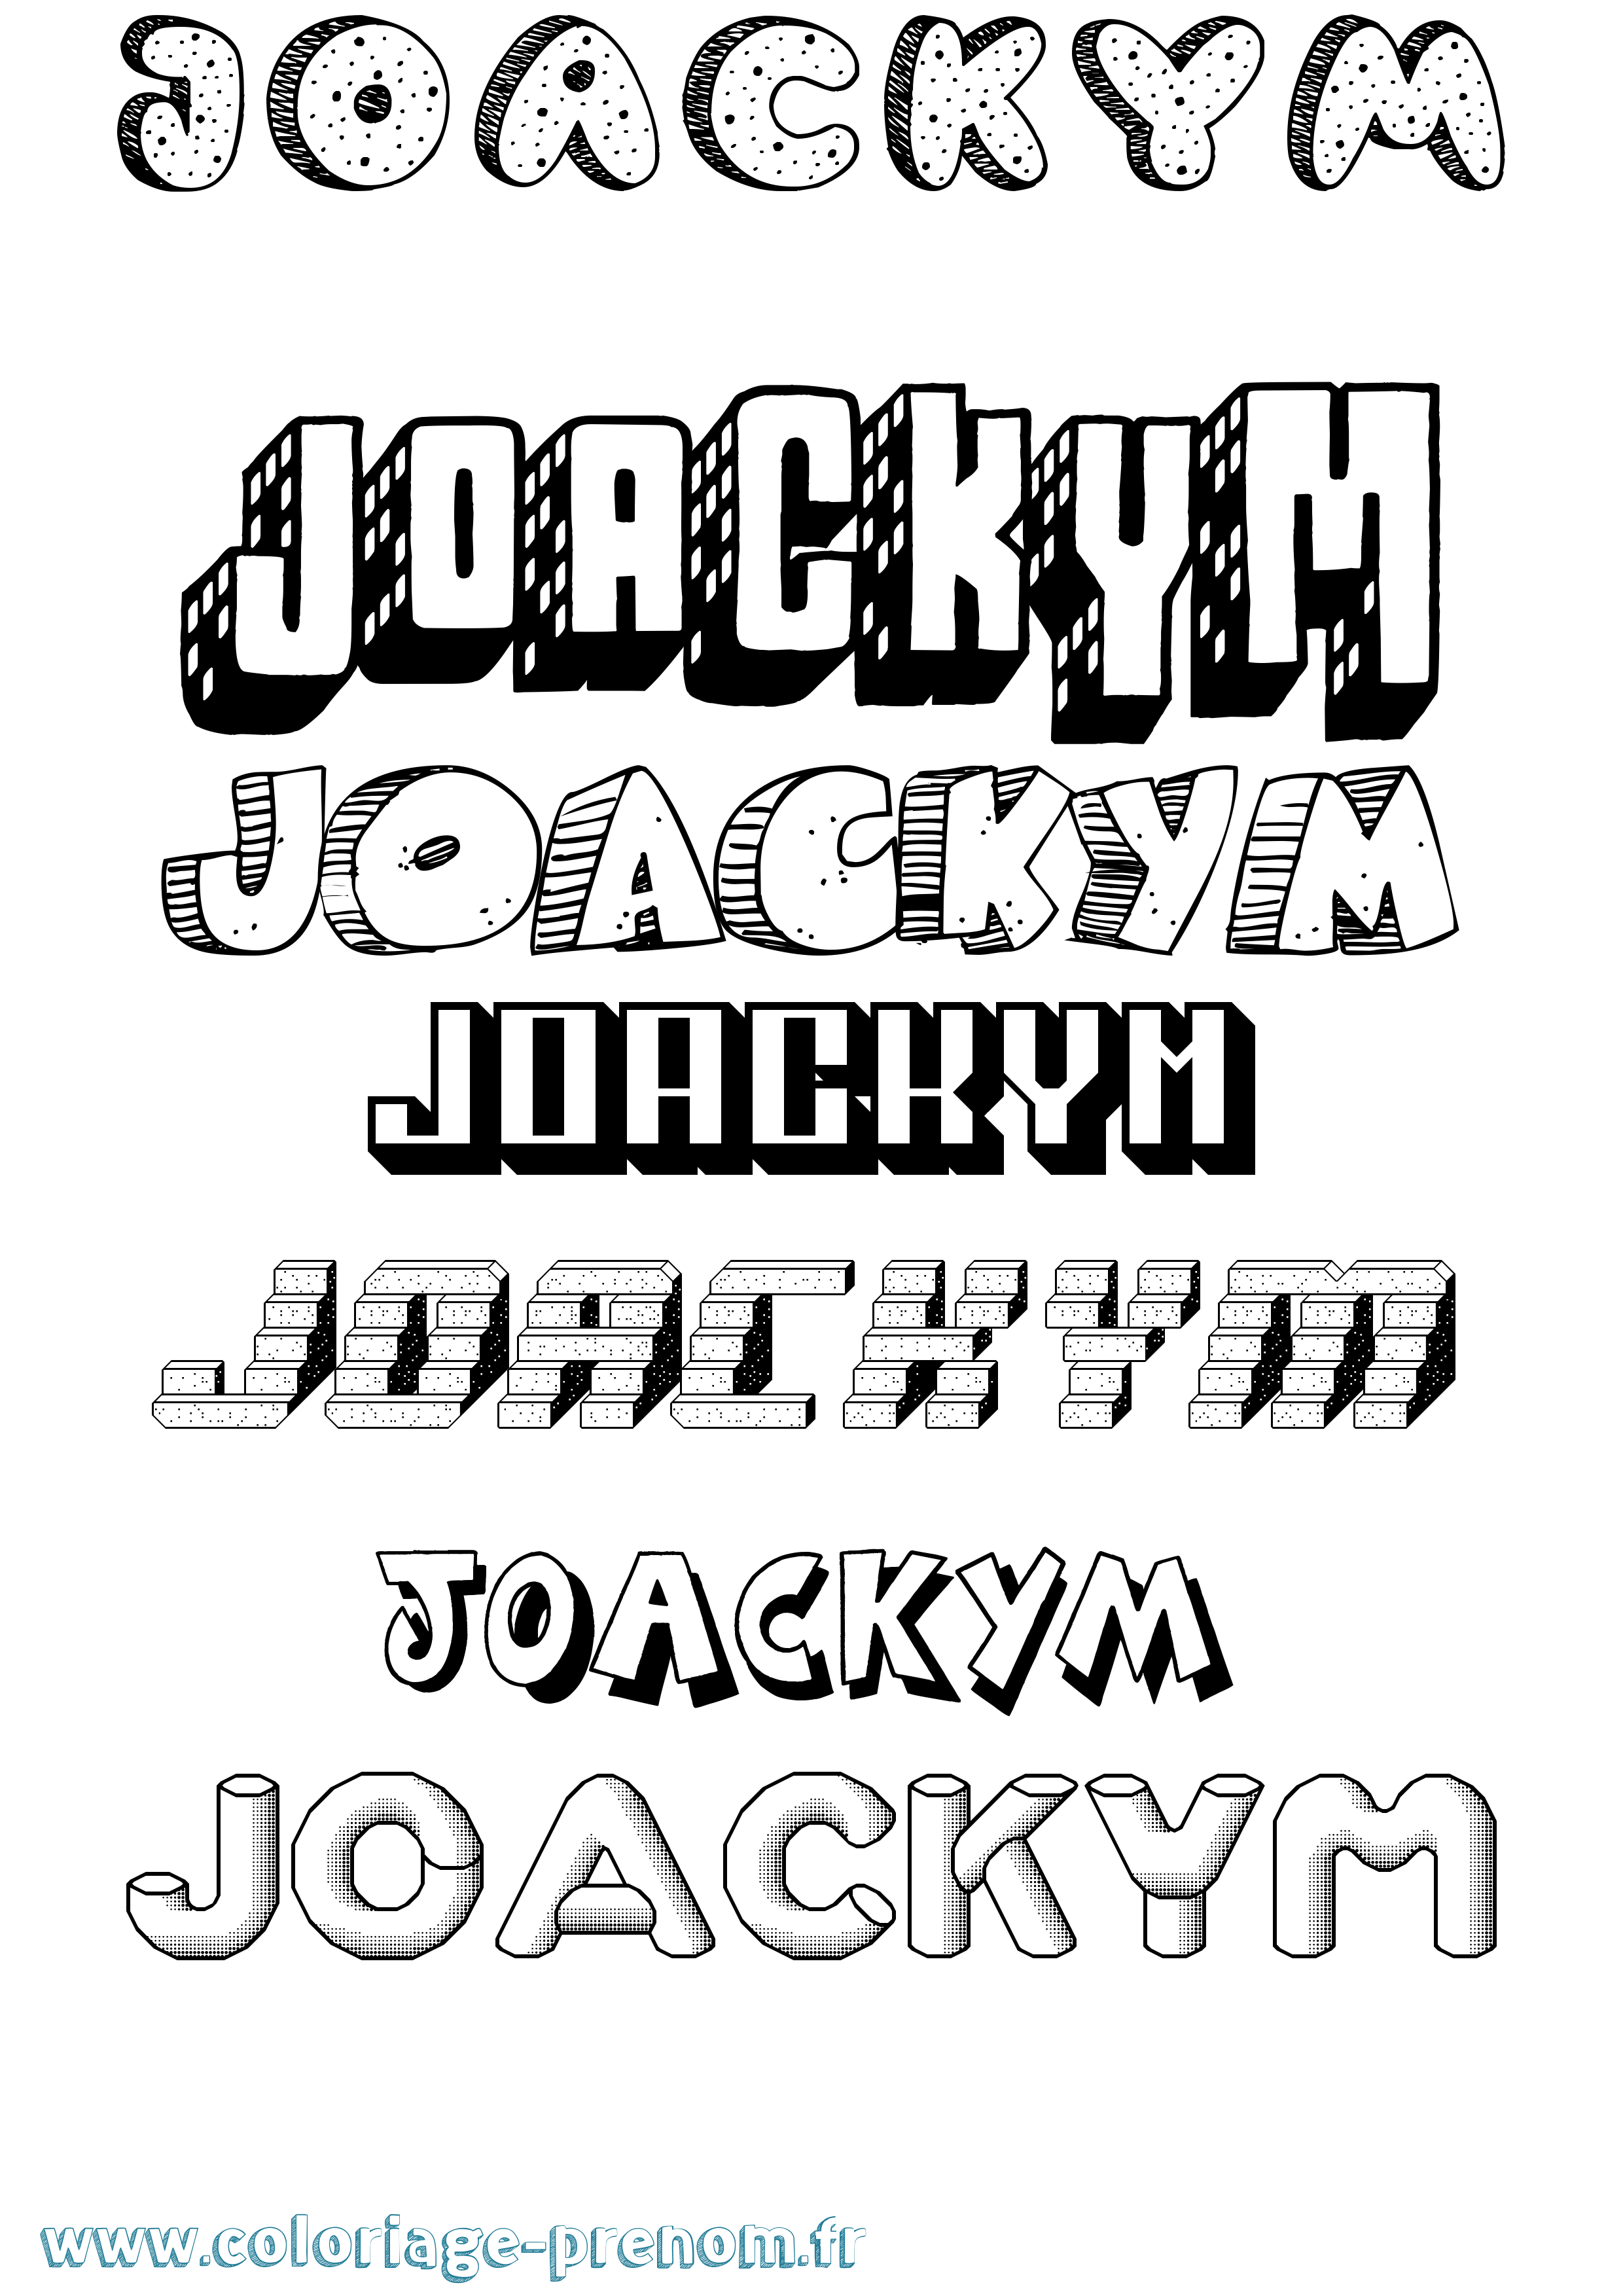 Coloriage prénom Joackym Effet 3D